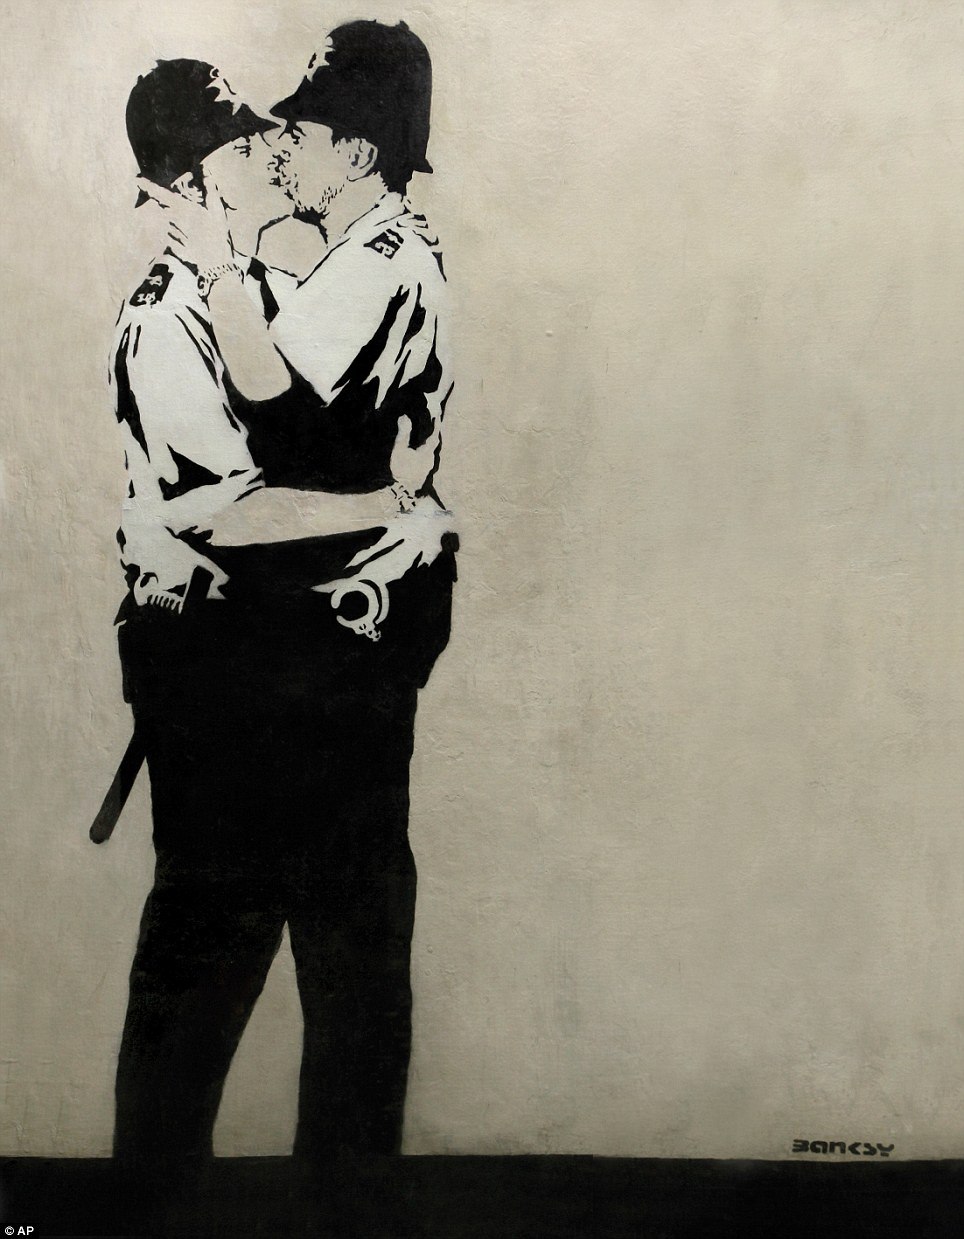 Love Banksy